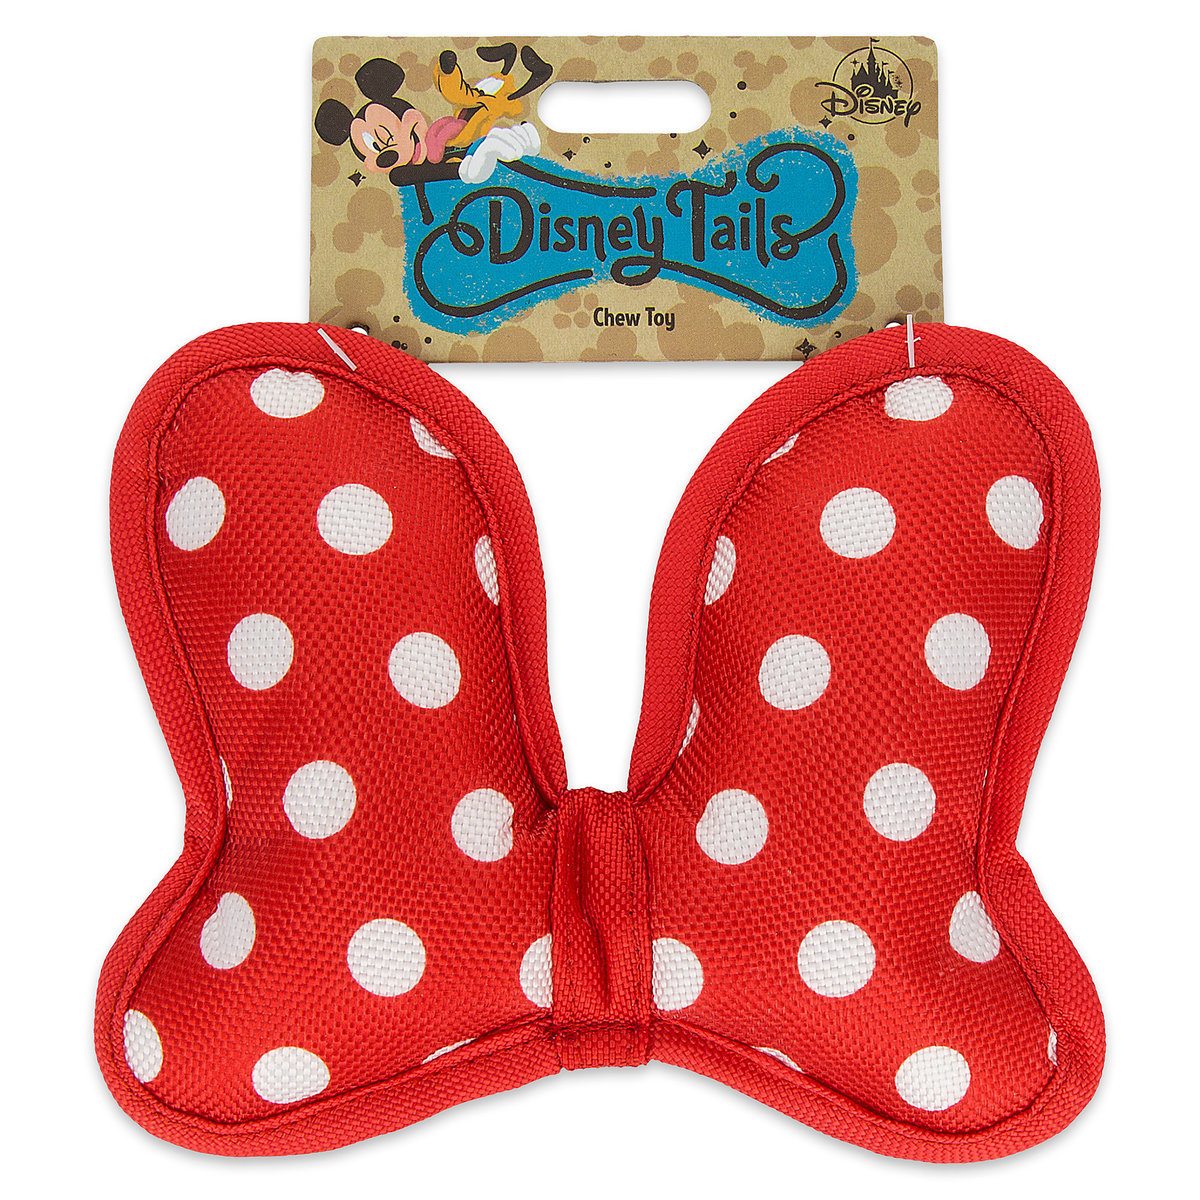 Disney Tails chew toy